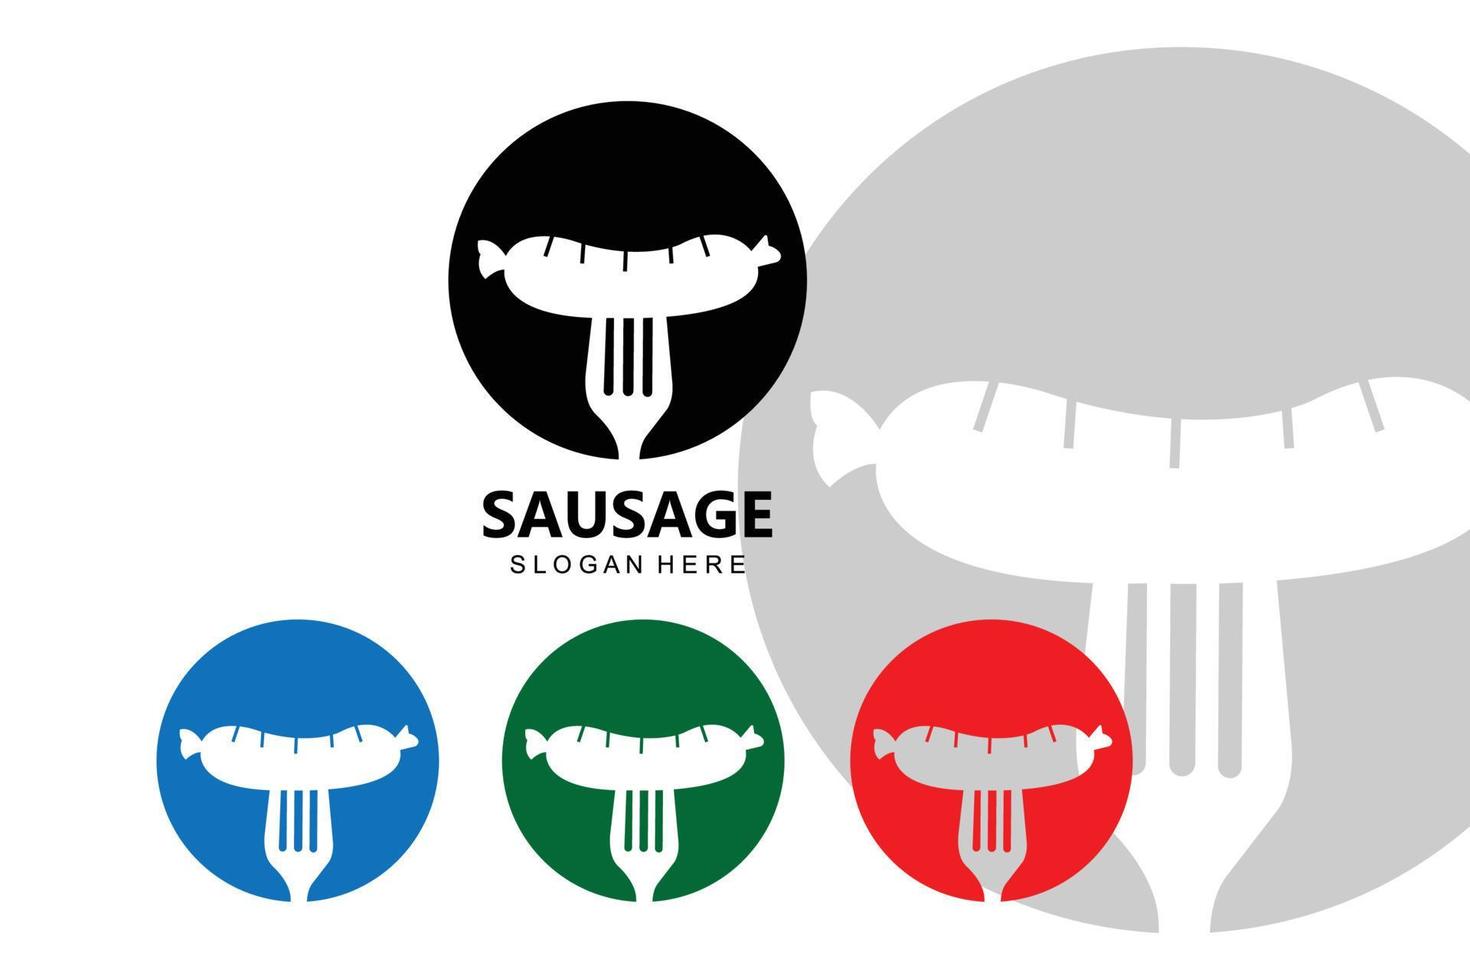 simbolo di vettore del logo della salsiccia alla griglia, carne alla griglia, concetto retrò